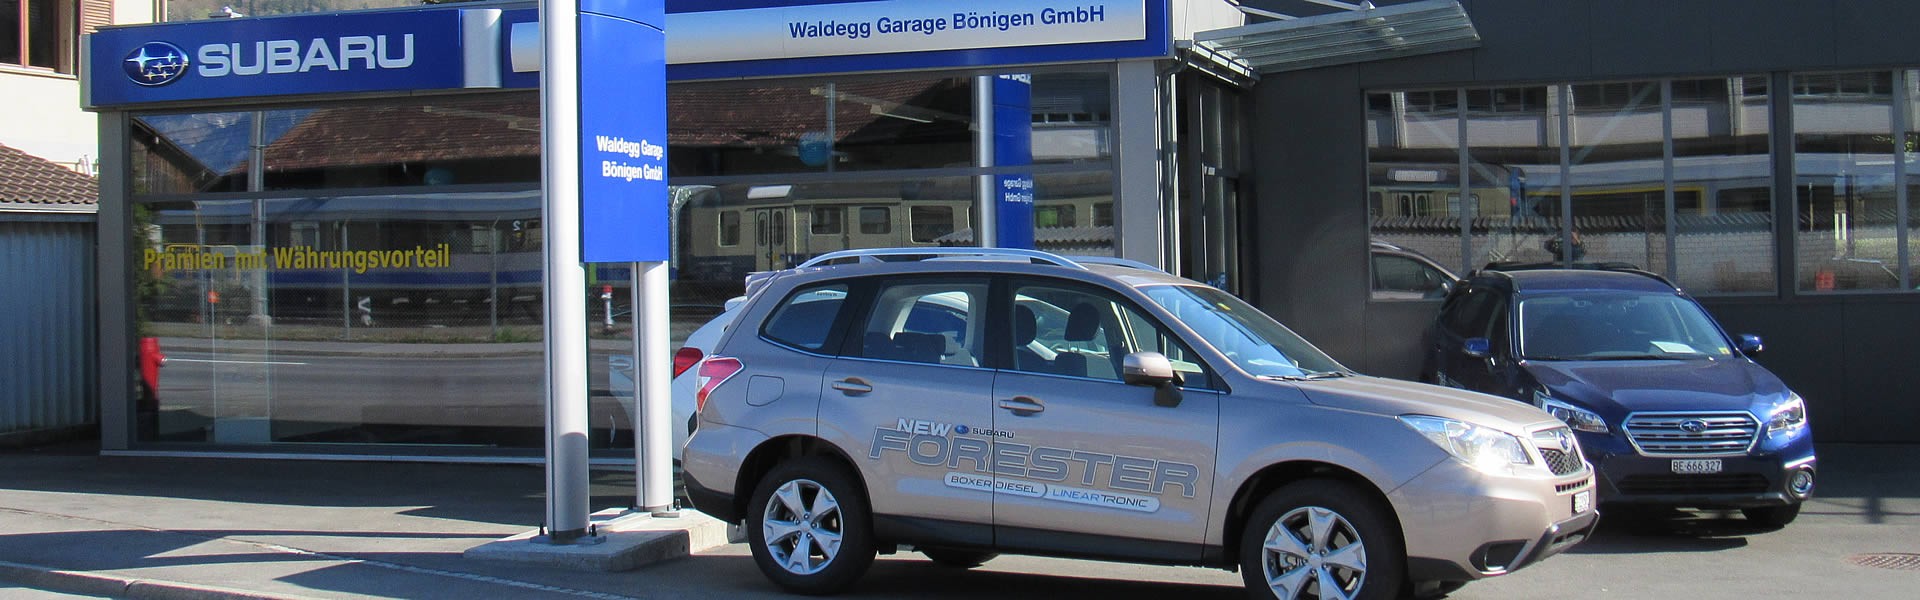 Bilder Waldegg Garage Bönigen GmbH